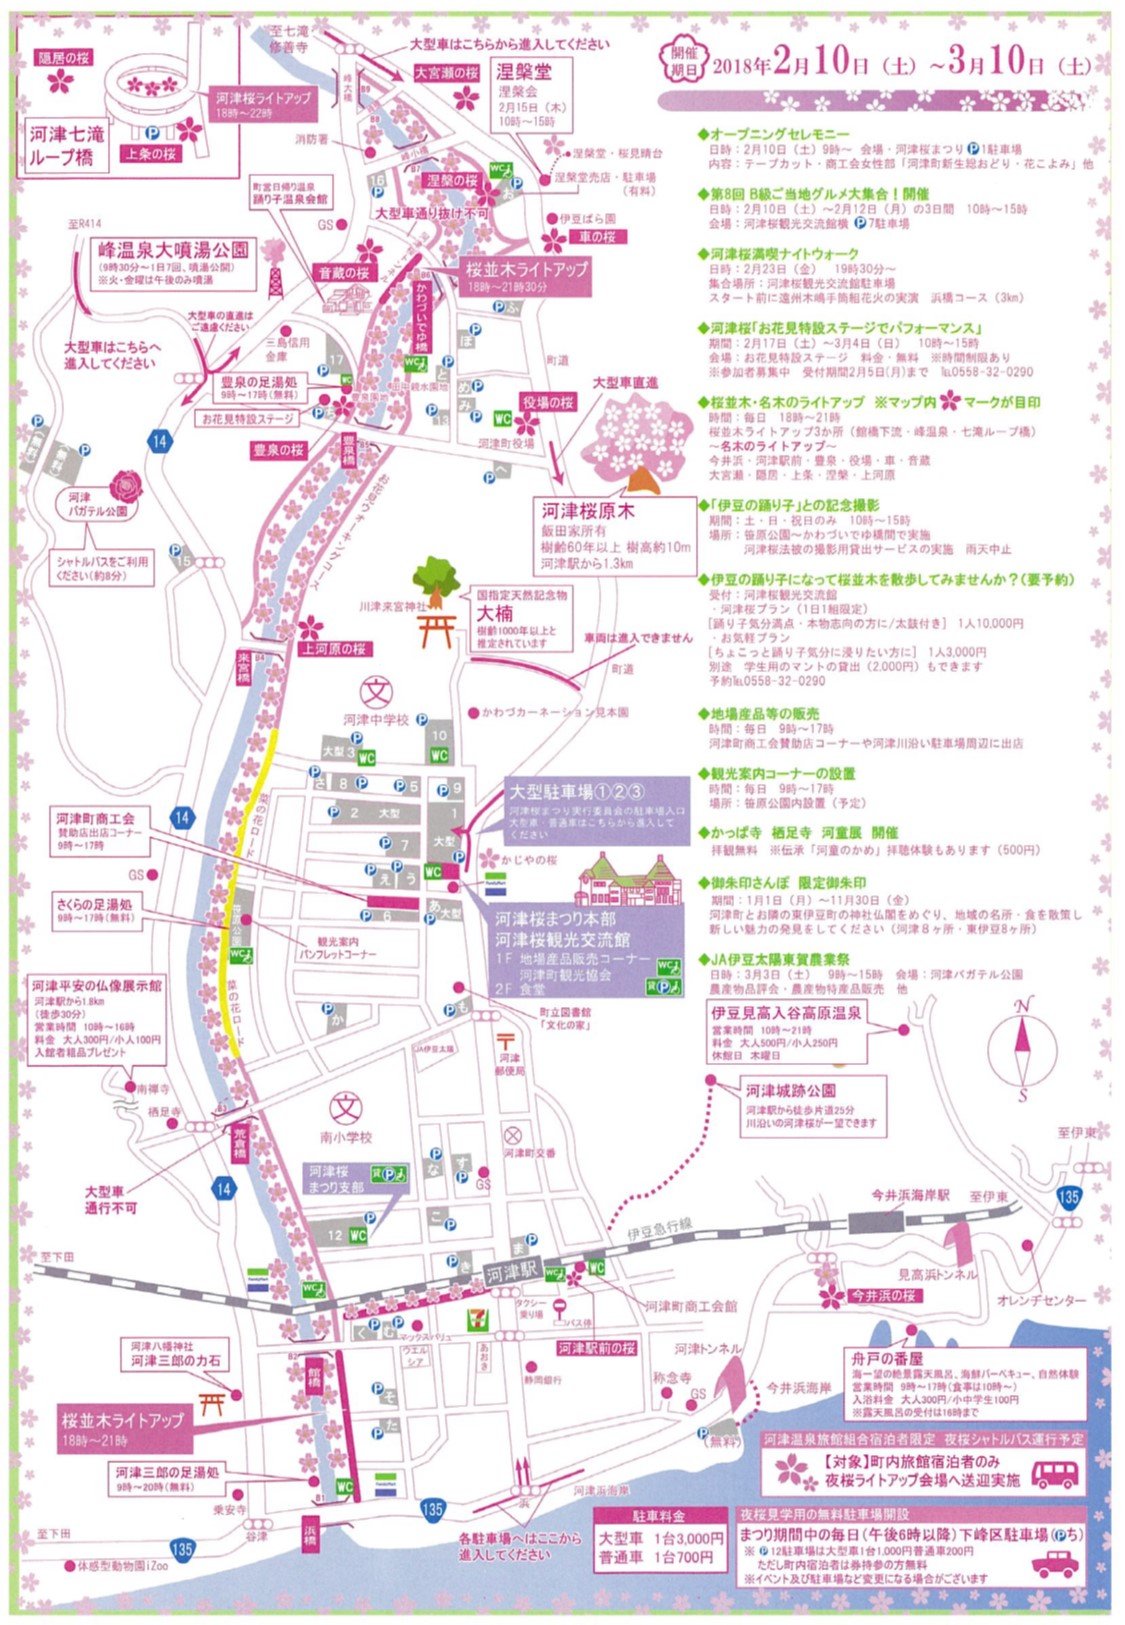 河津桜祭り（2018.2.10～2018.3.10）